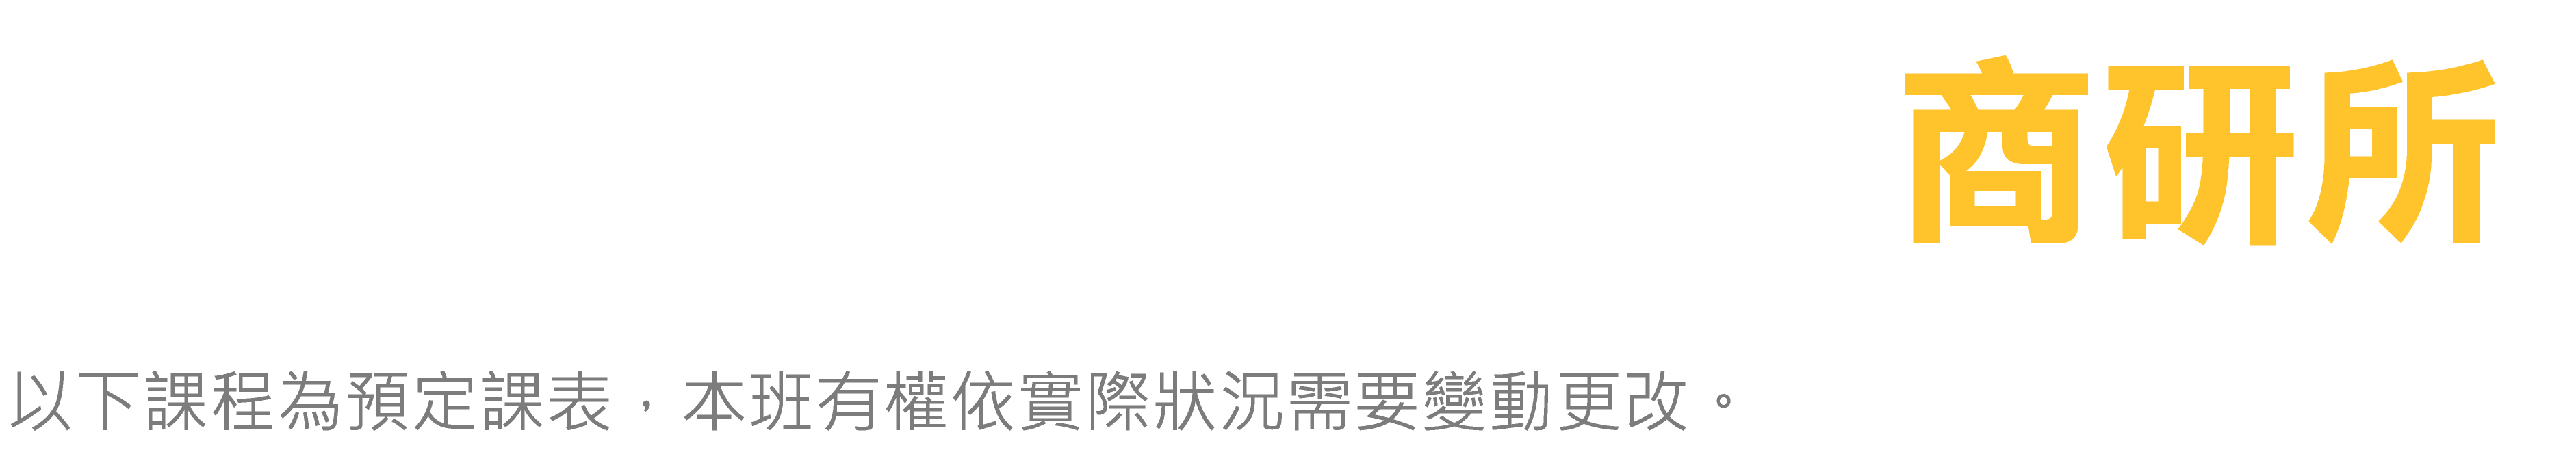 台北偉文 商研所 預定課表